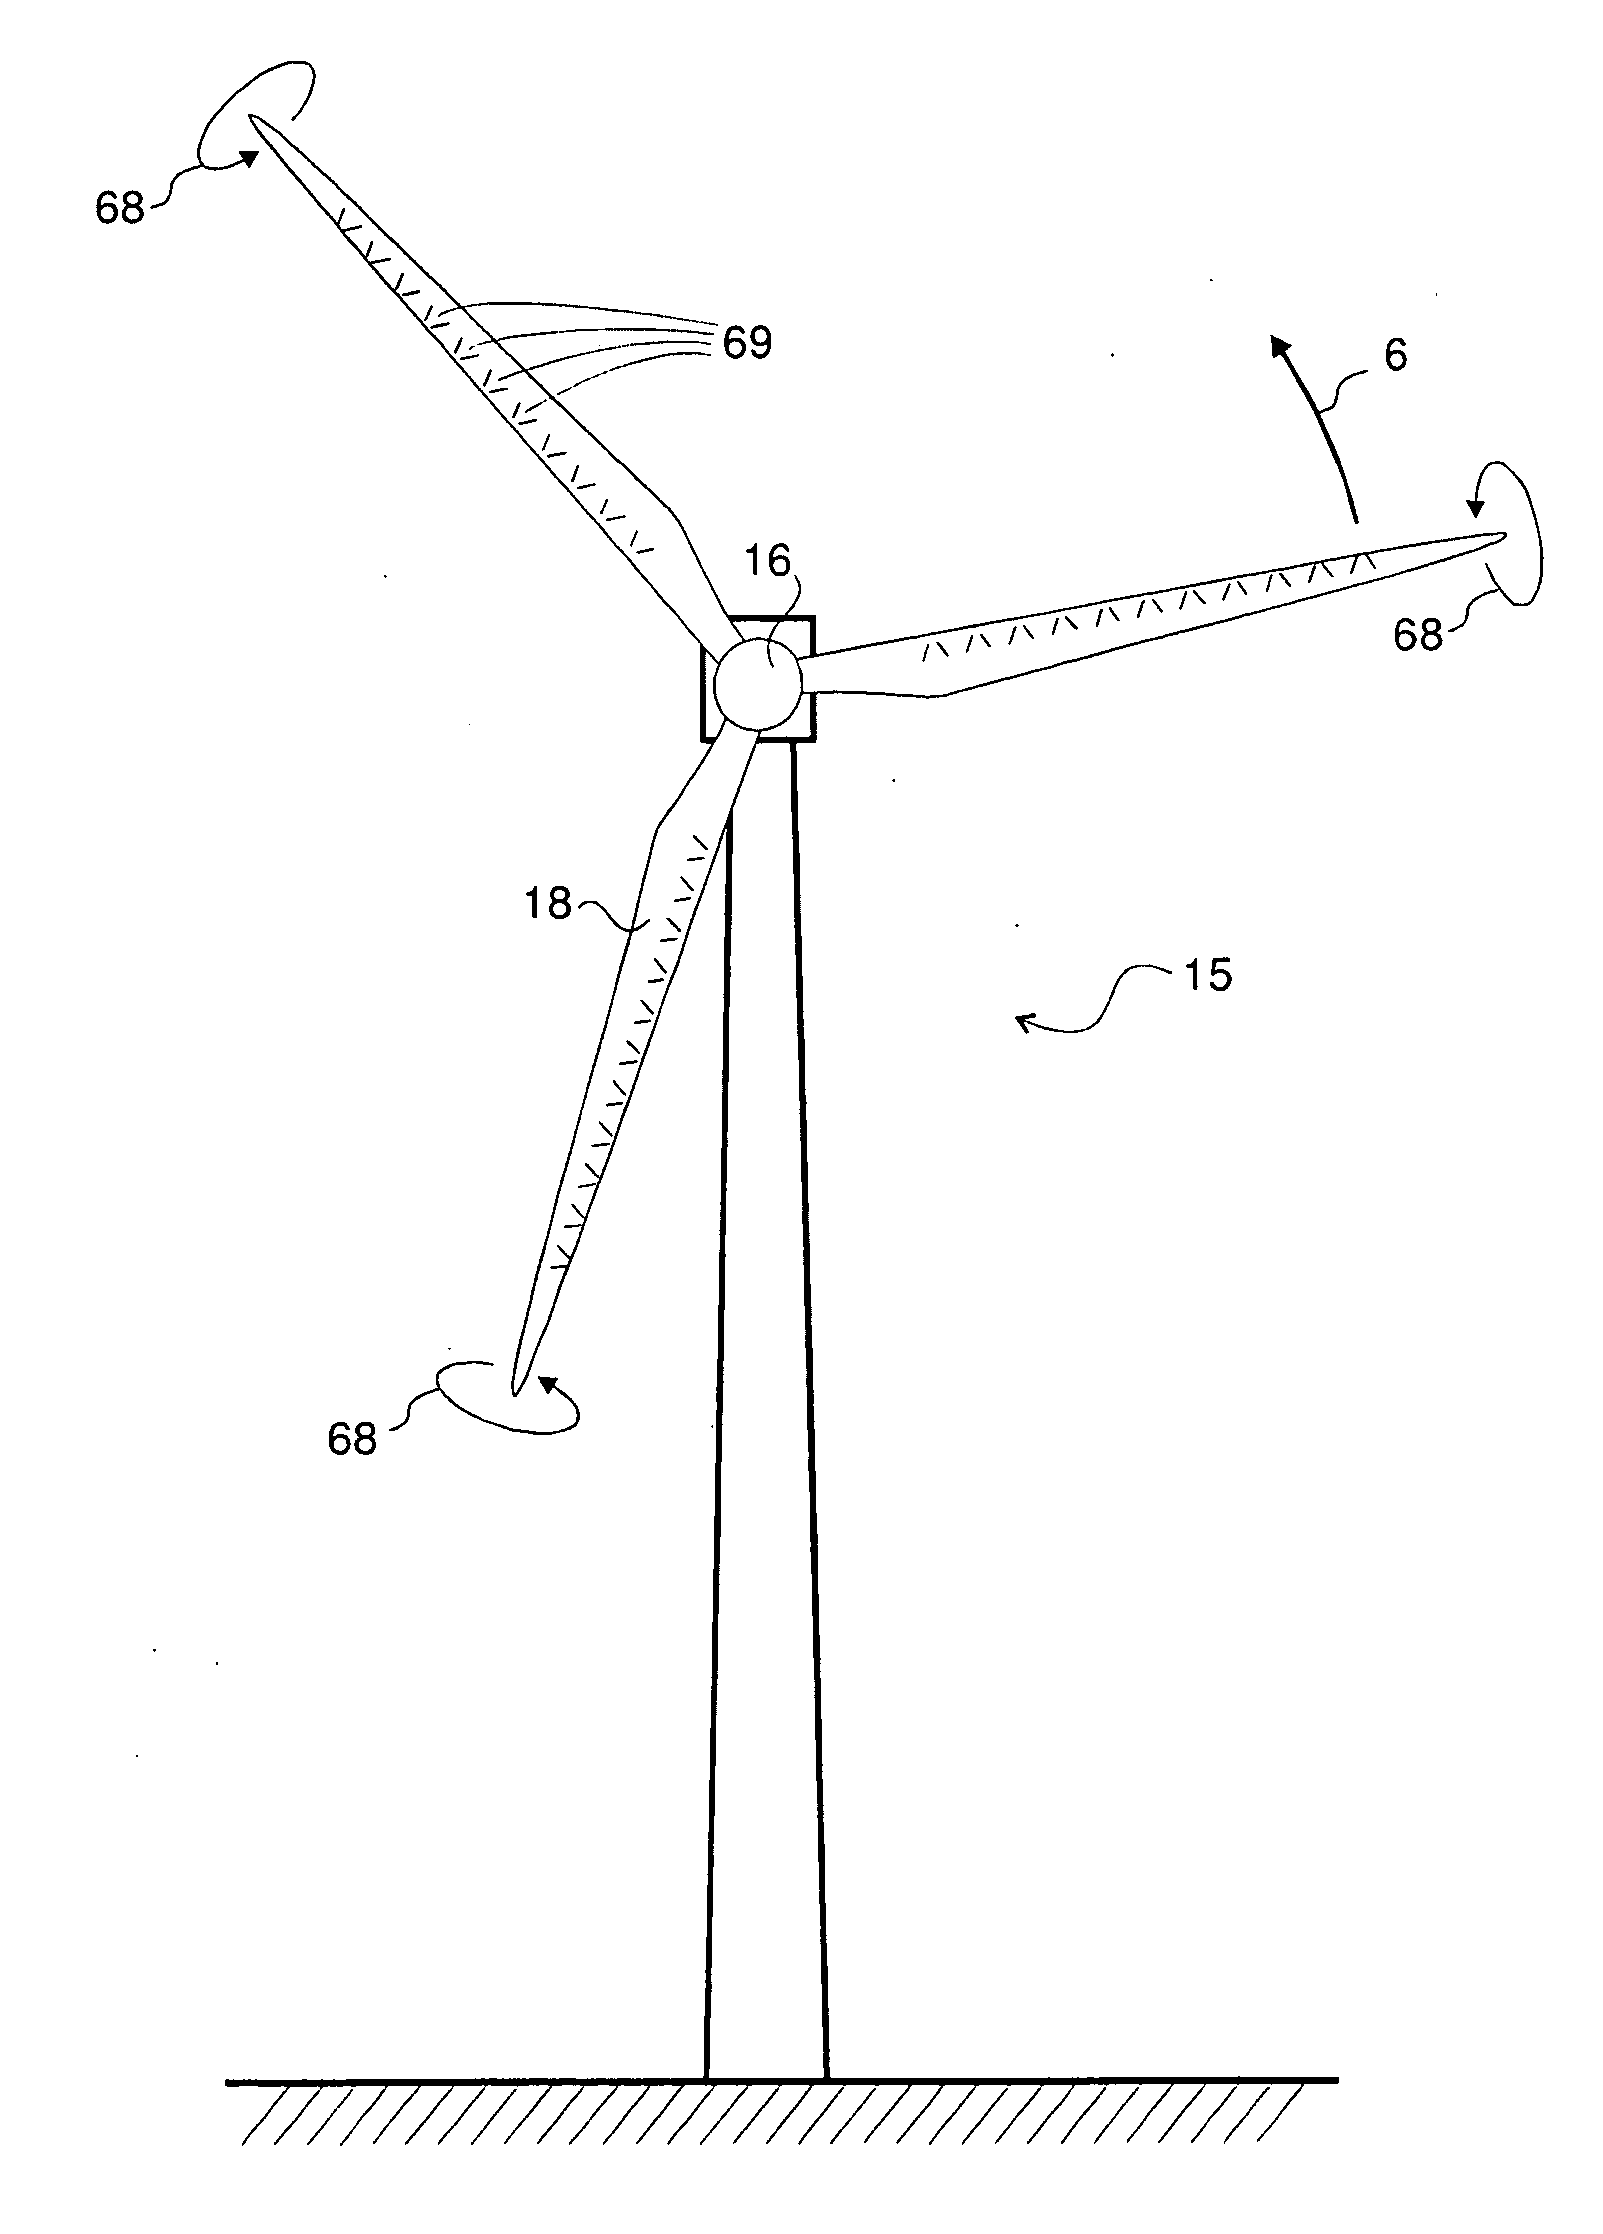 Windturbine with slender blade